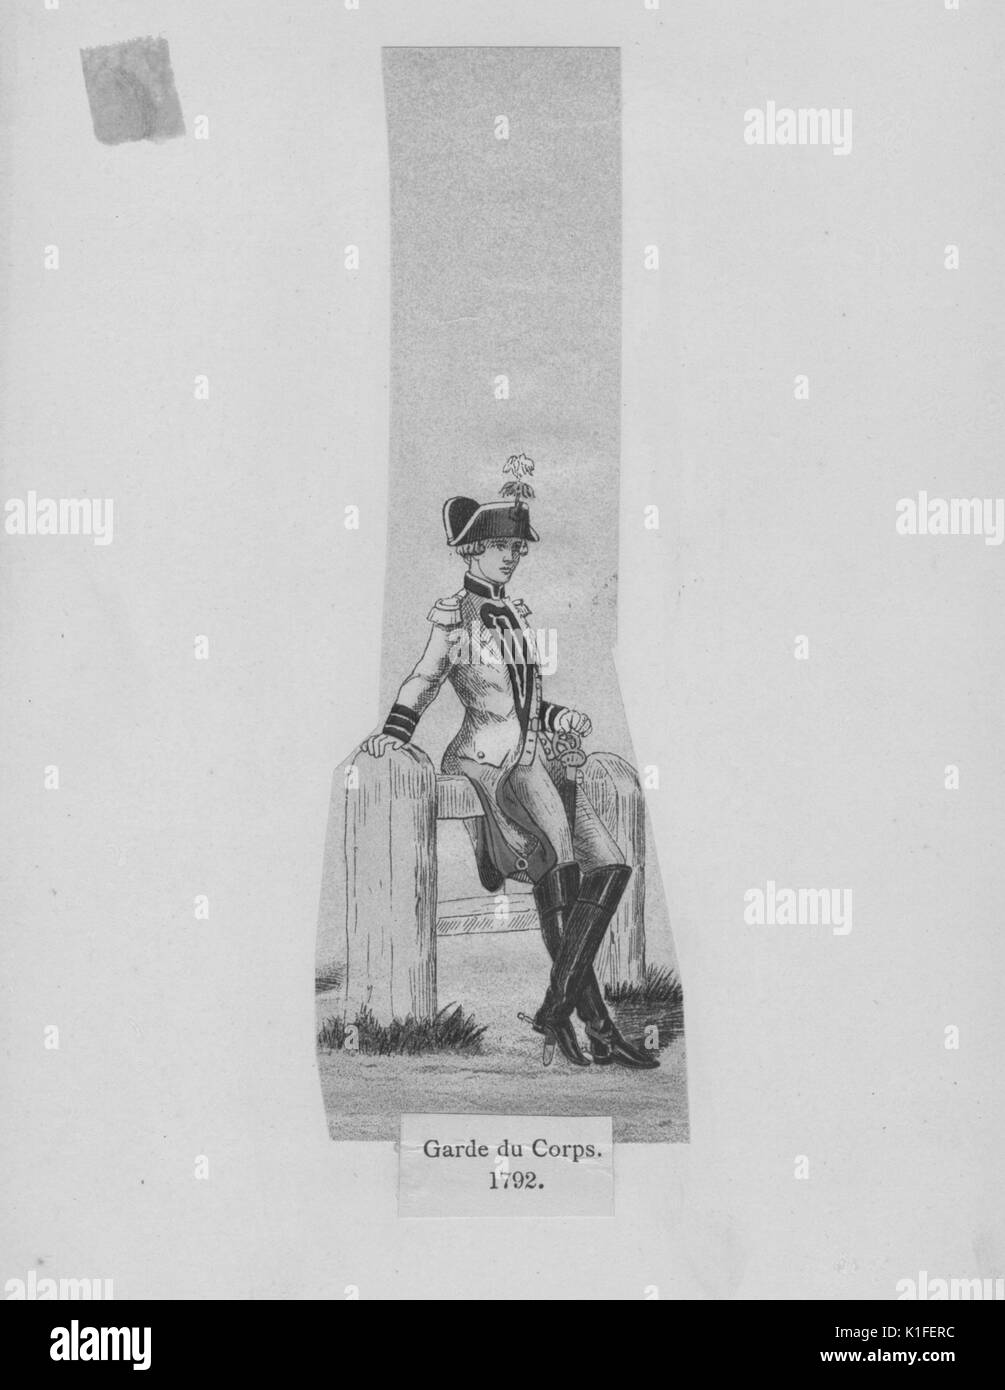 Gravure couleur d'un soldat français en appui sur une clôture intitulé, Garde du corps, une unité militaire formé de gardes, 1792. À partir de la Bibliothèque publique de New York. Banque D'Images